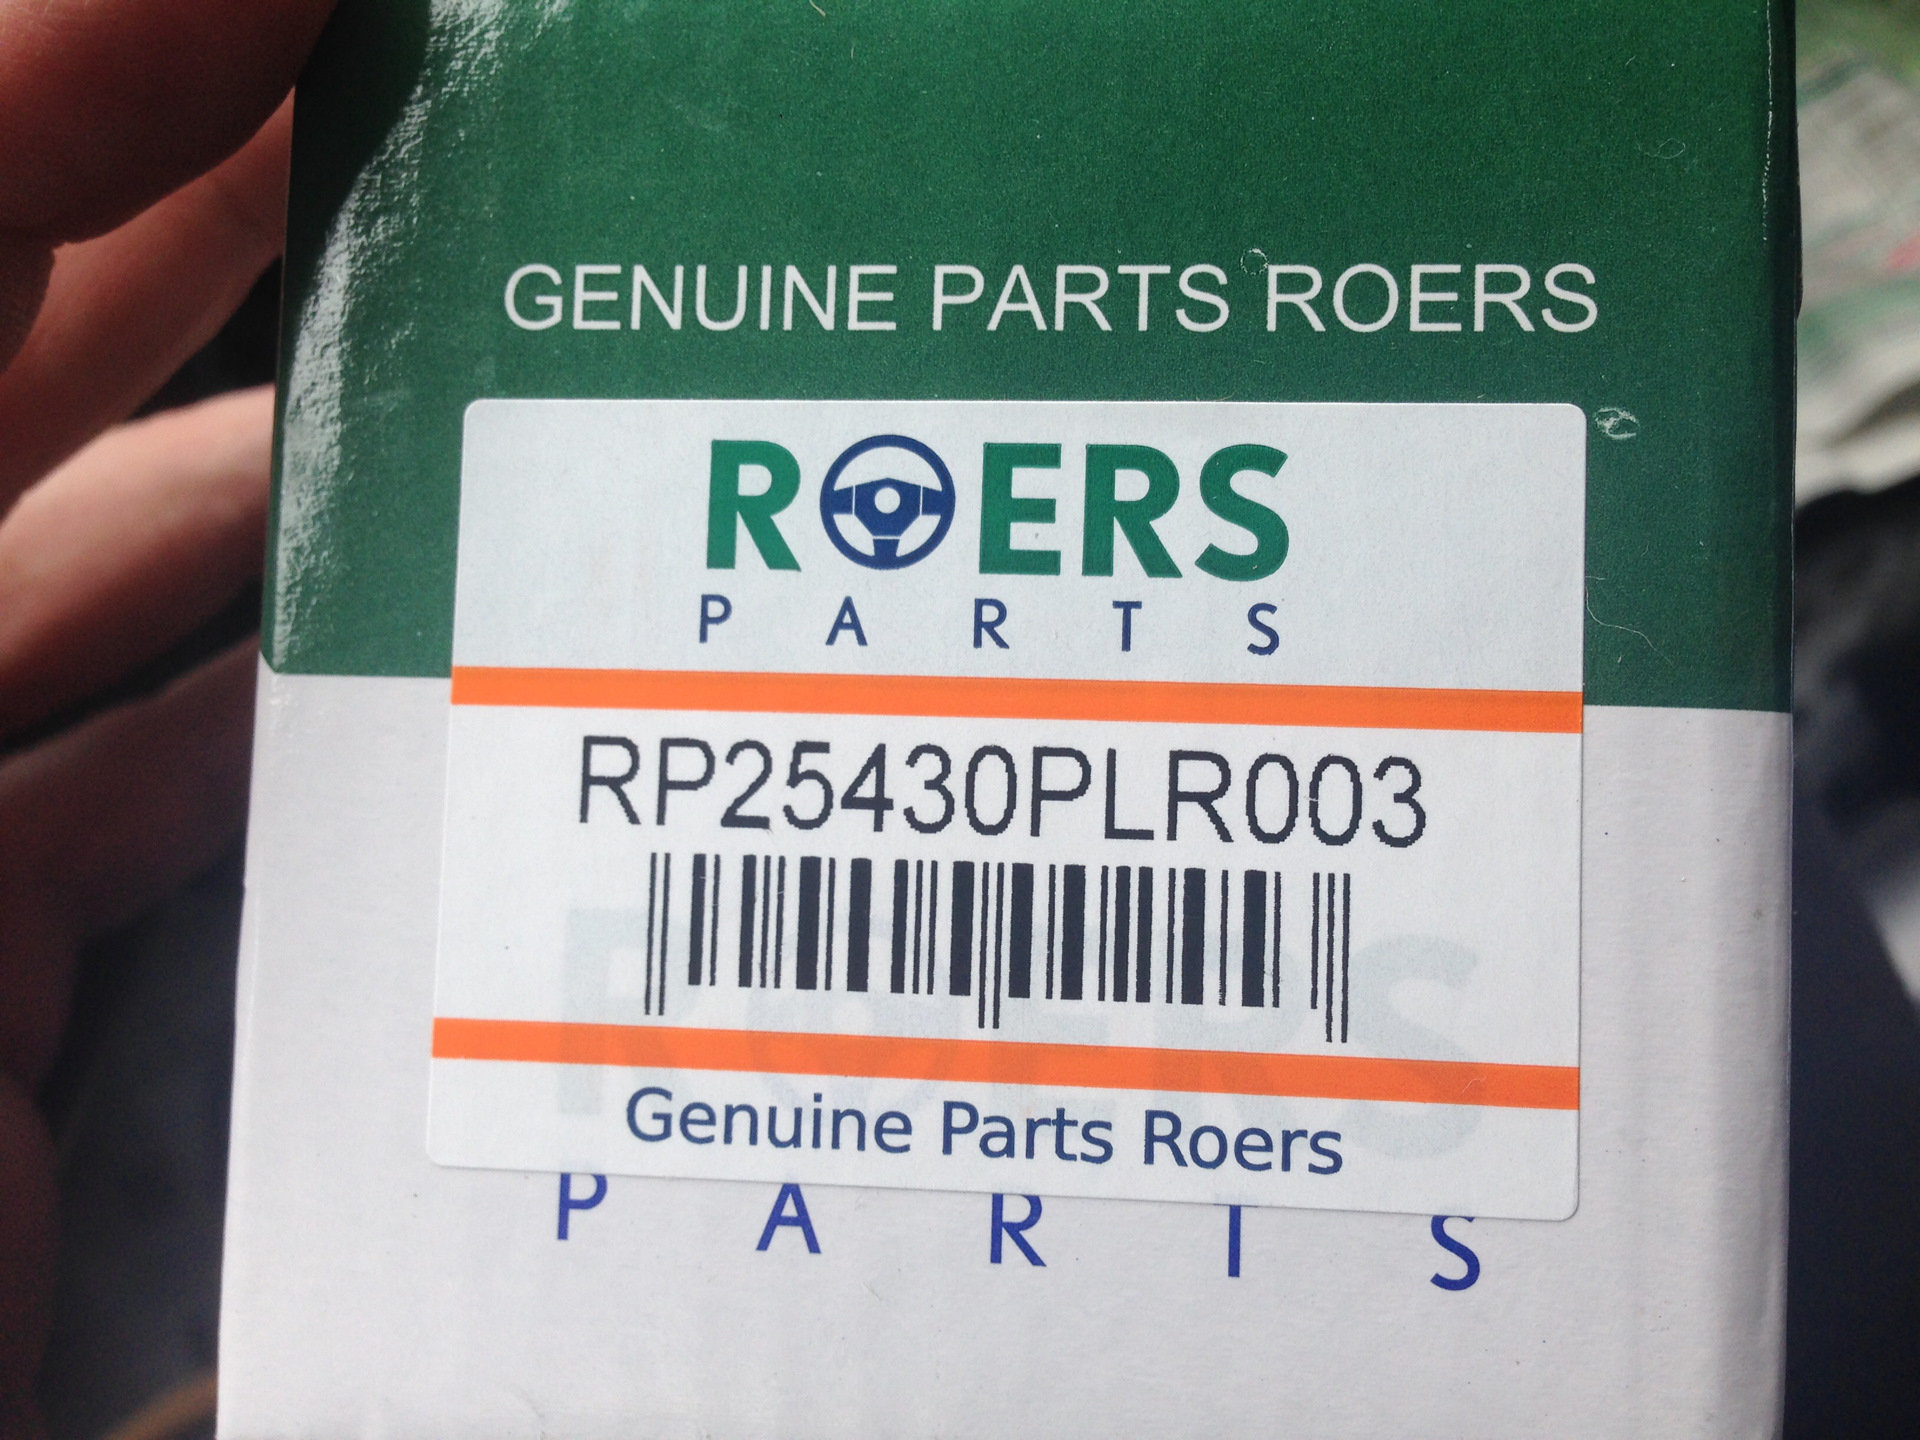 Roers parts производитель. Rp25430plr003 вскрытие. Rp25430plr003. 25430plr003 распил. Внешний магистральный фильтр для АКПП roers-Parts rp25430plr003.